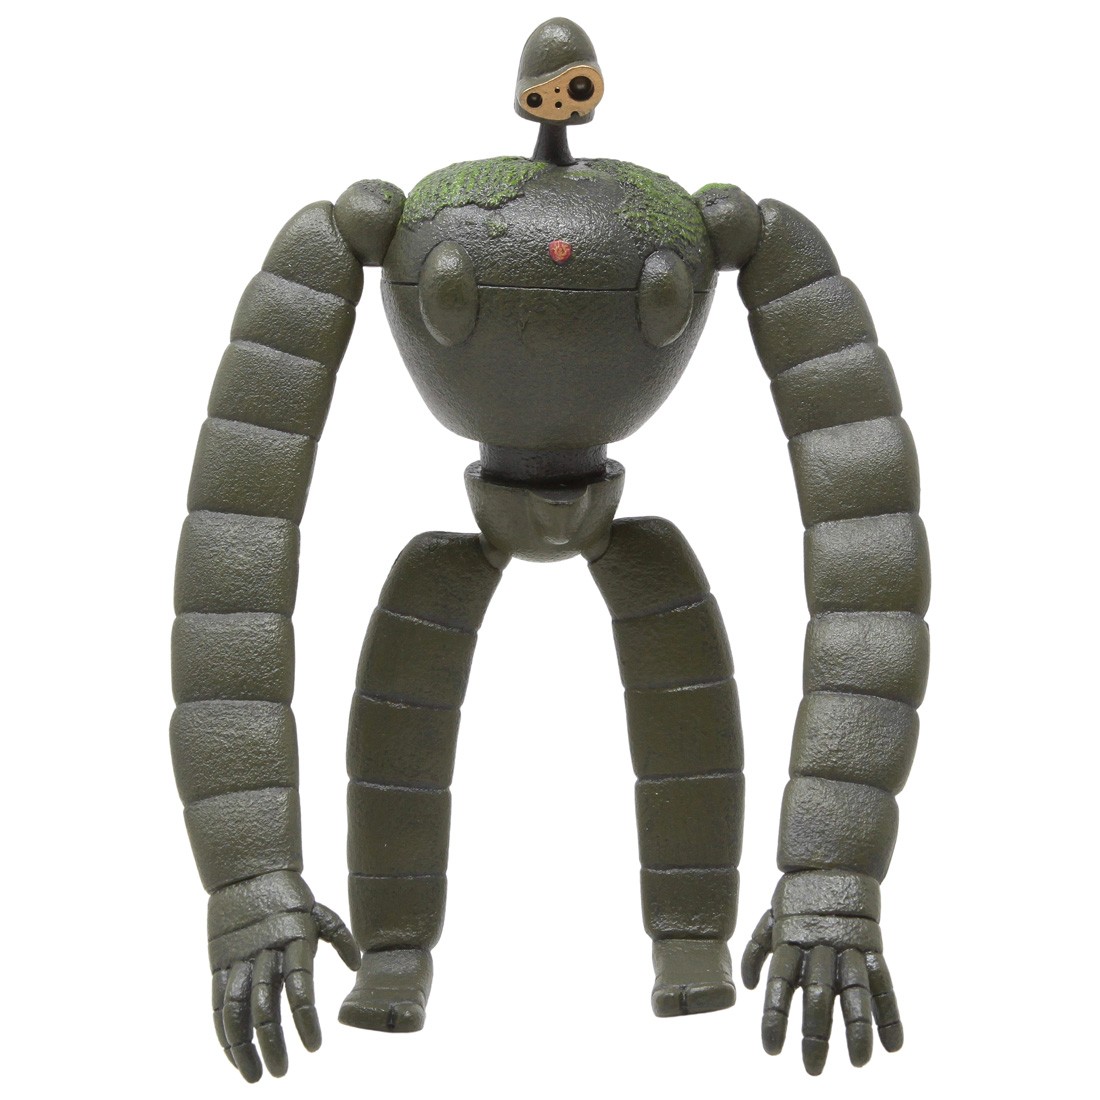 Studio Ghibli Benelic Castle In The Sky Gardener Robot Soldier Posing Figure (olive)